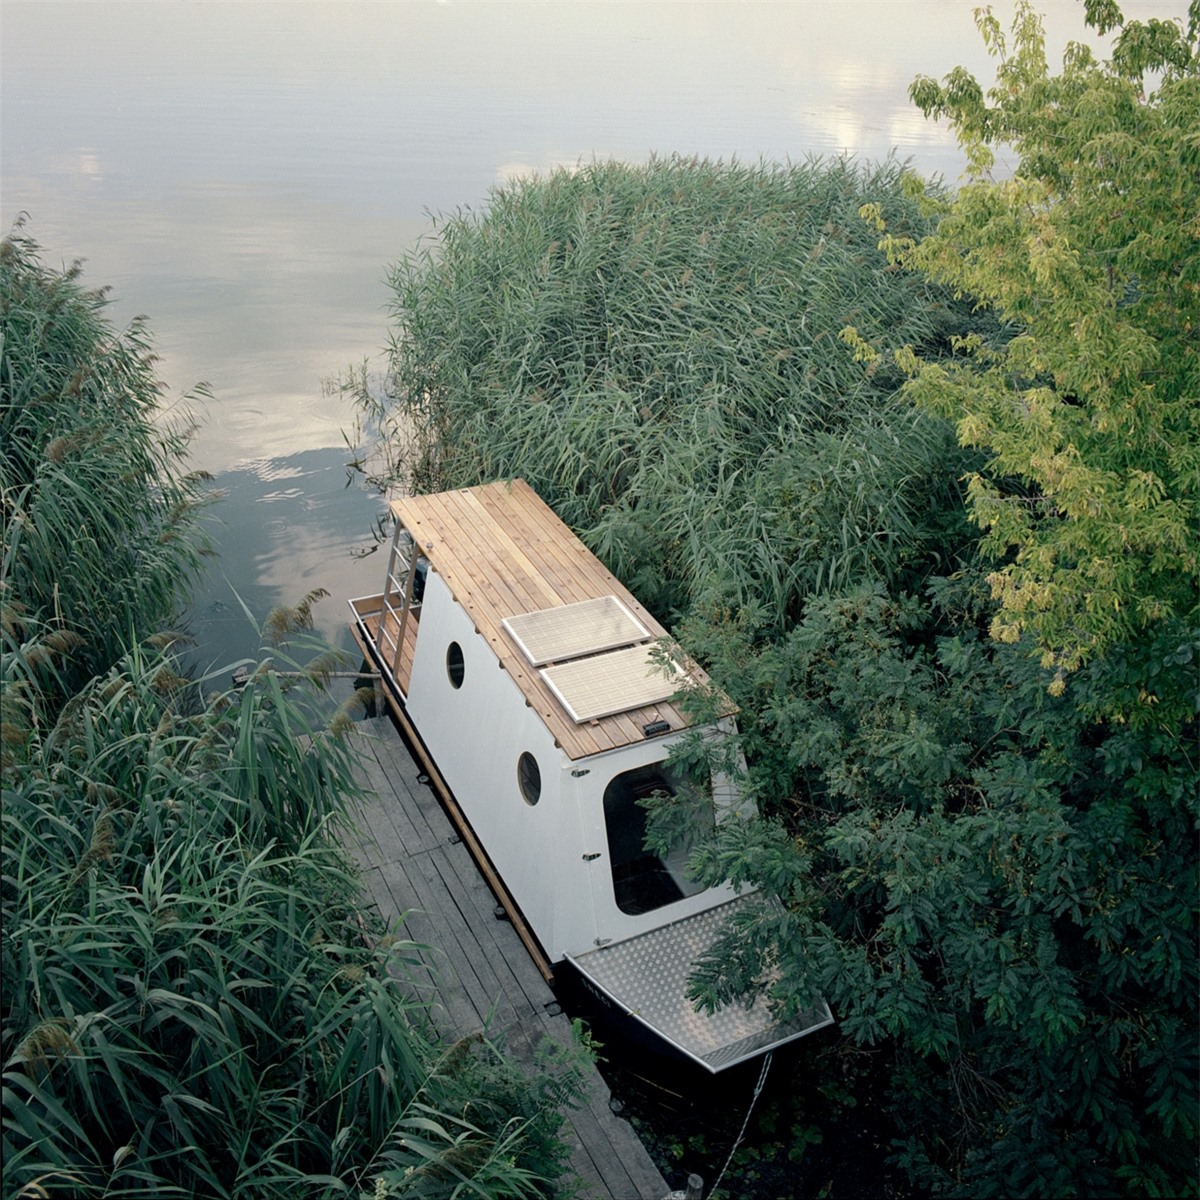 Kiến trúc sư tàinăng người Hungary - Tamás Bene, đã thiết kế một ngôi nhà thuyền xinh xắn cho một cặp vợ chồng trẻ đến từ Budapest.Ngôi nhà thuyền vốn là một chiếc thuyền đánh cá địa phương, neo tại hồ Tisza - hồ chứa nhân tạo nằm trongkhu bảo tồn thiên nhiên rộng 7.000 ha, là nơi sinh sống của động vật hoang dã trong đó cóhơn 100 loài chim khác nhau.